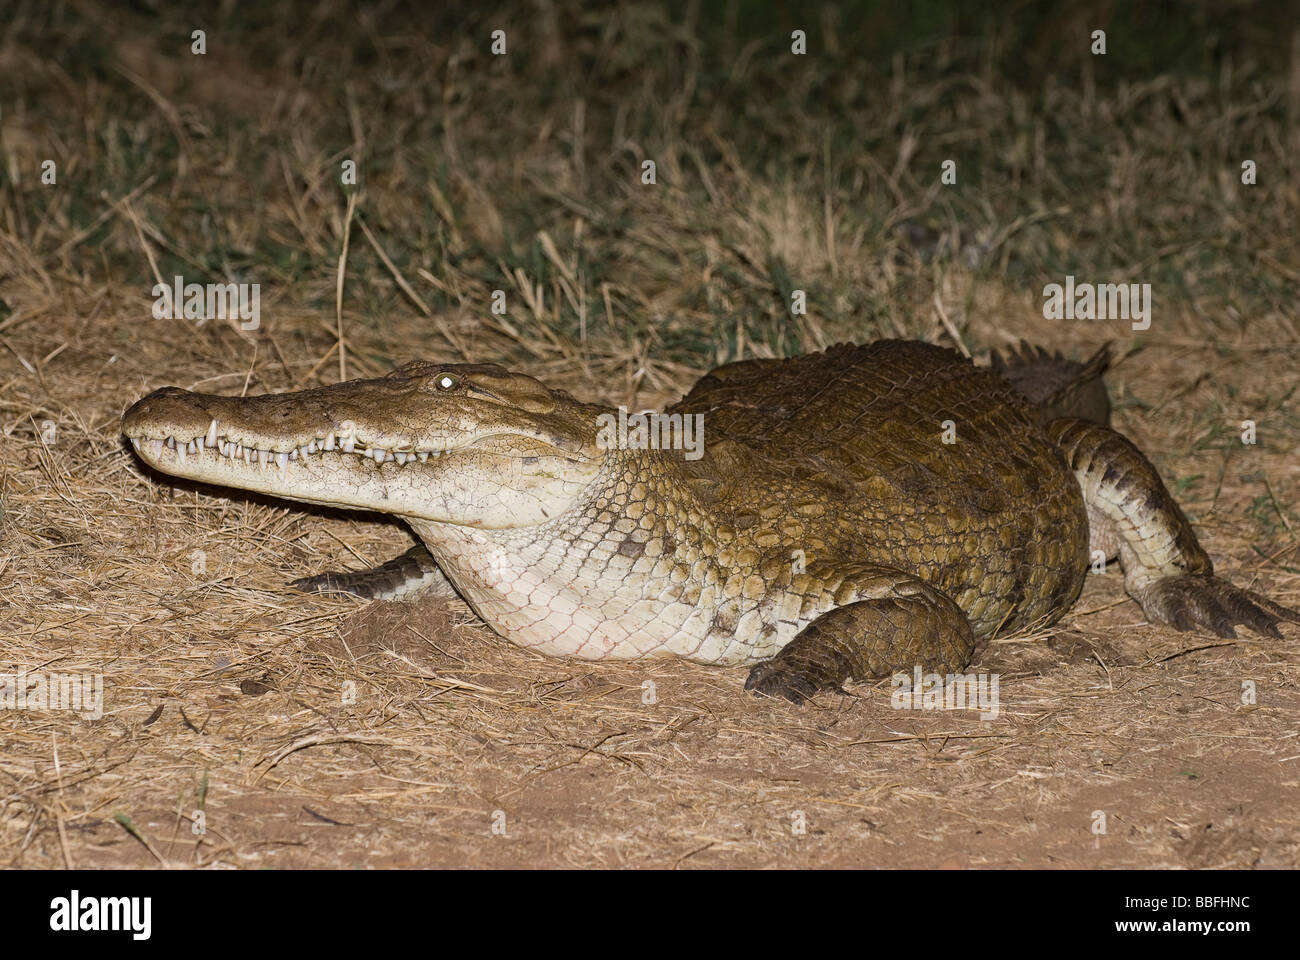 Crocodile du Nil Crocodylus niloticus noctual à l'alimentation de la réserve nationale de Samburu Serena Lodge Kenya Afrique de l'Est Banque D'Images